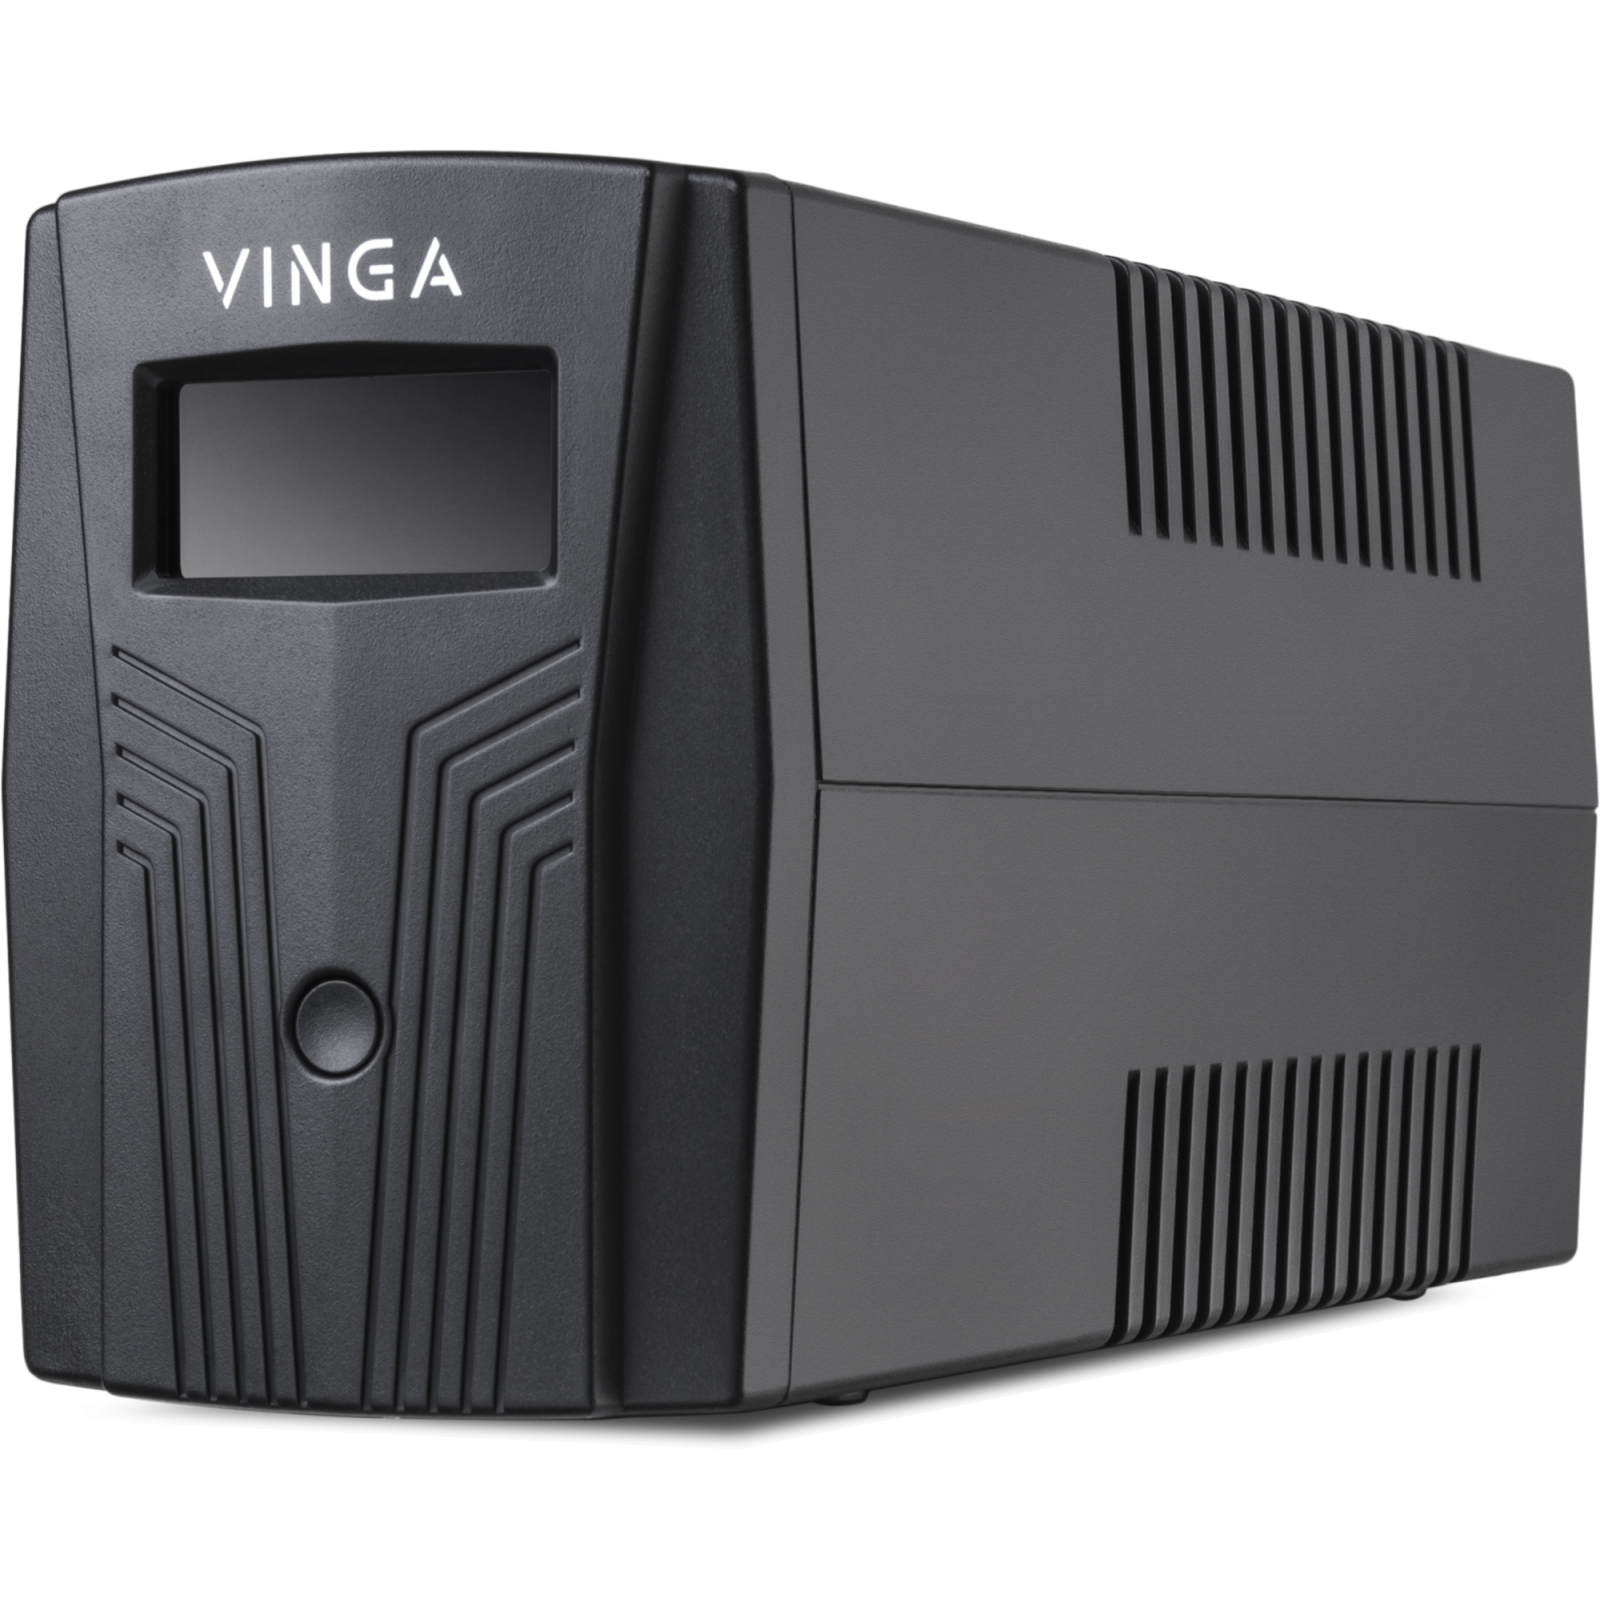 Источник бесперебойного питания Vinga LCD 1200VA plastic case (VPC-1200P) изображение 6